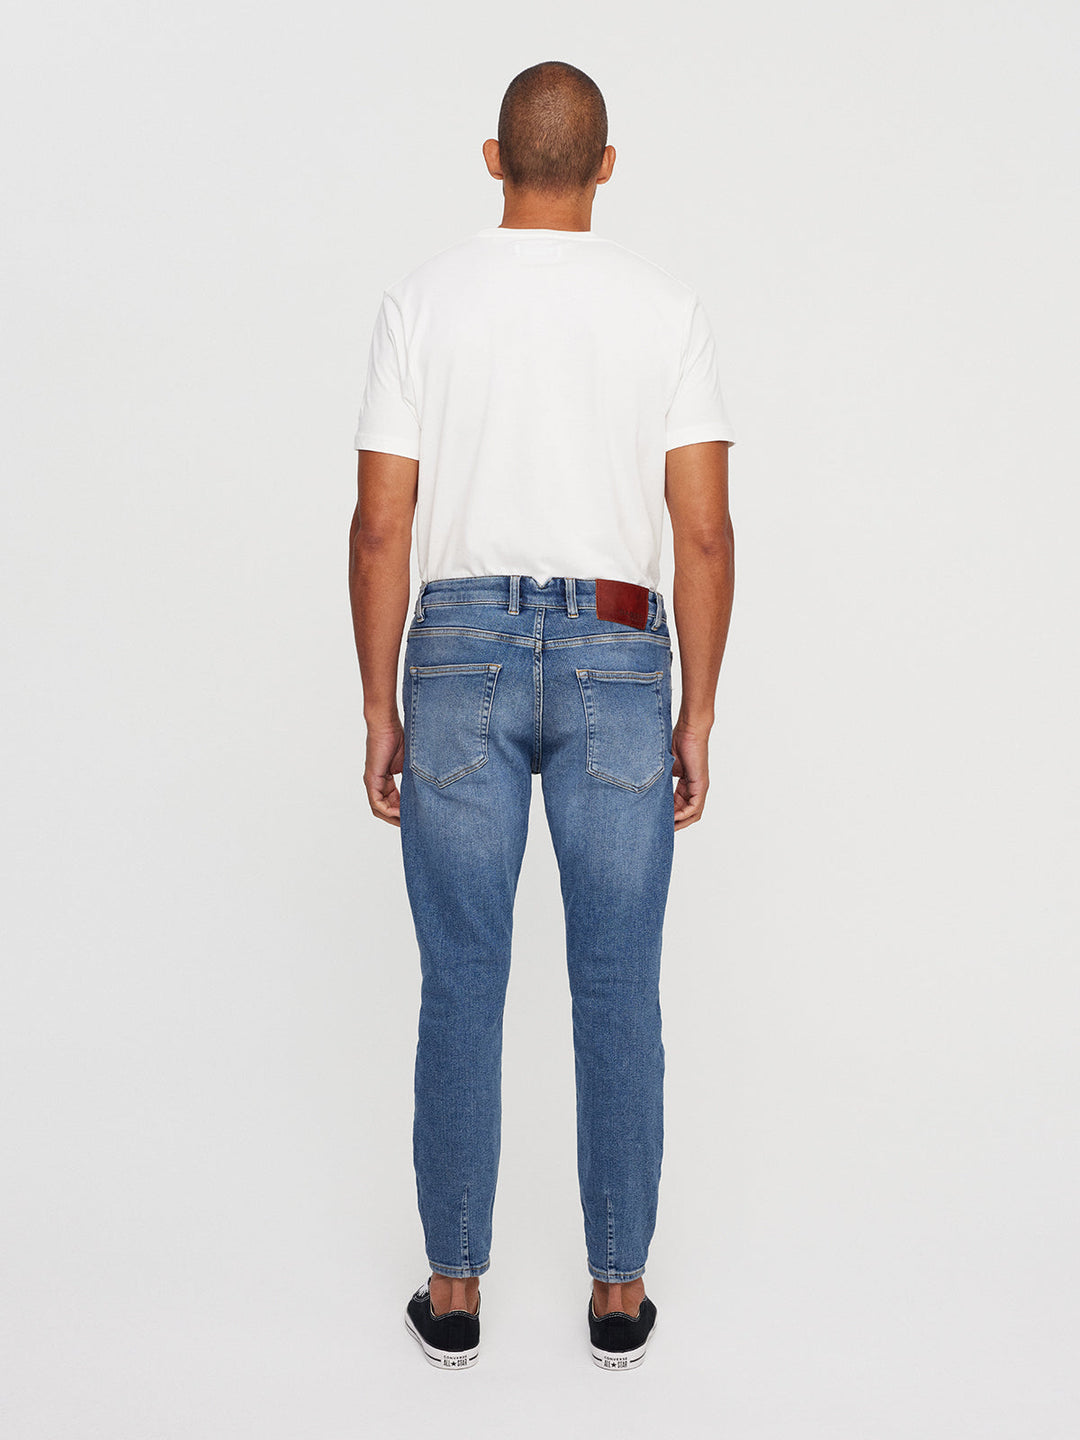 Alexandra No Pocket Bling Jeans #DJ3389 – GRAY FASHION